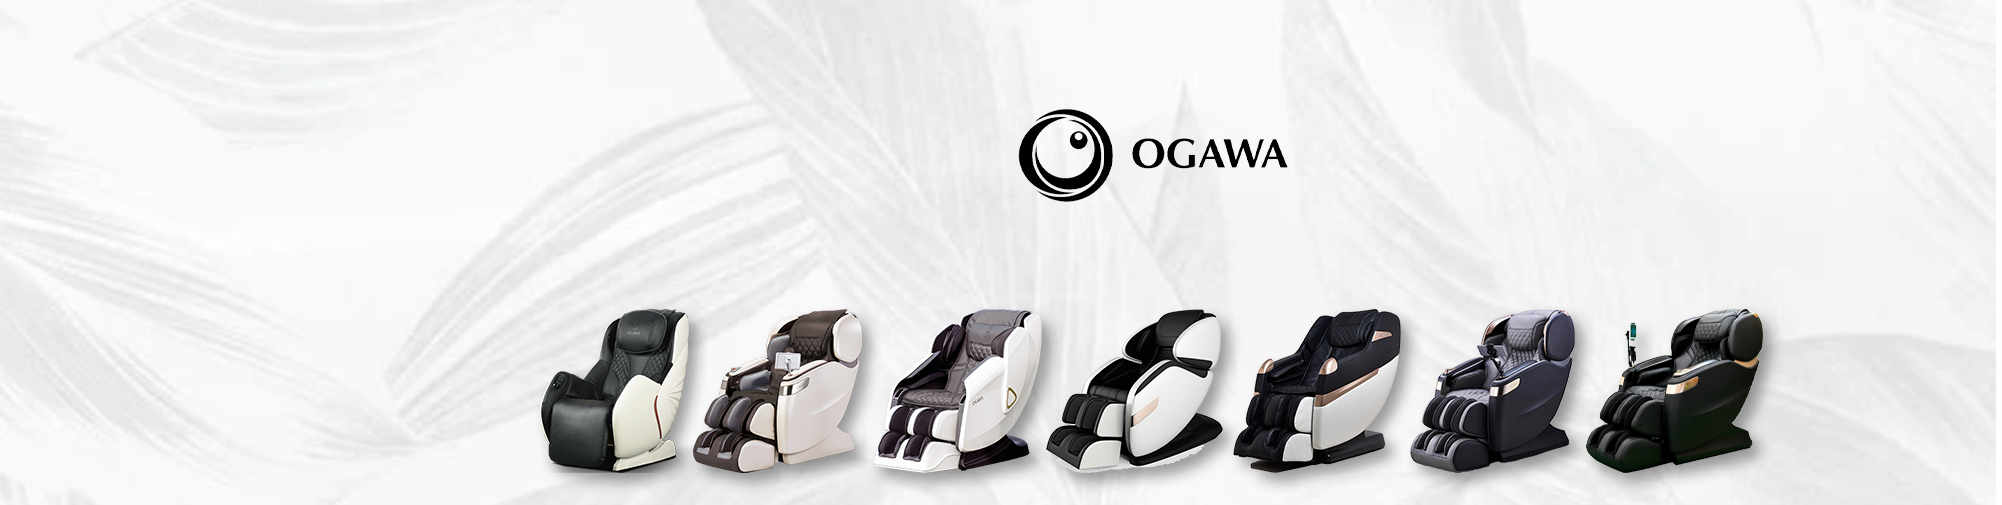 OGAWA | Lumea scaunelor de masaj